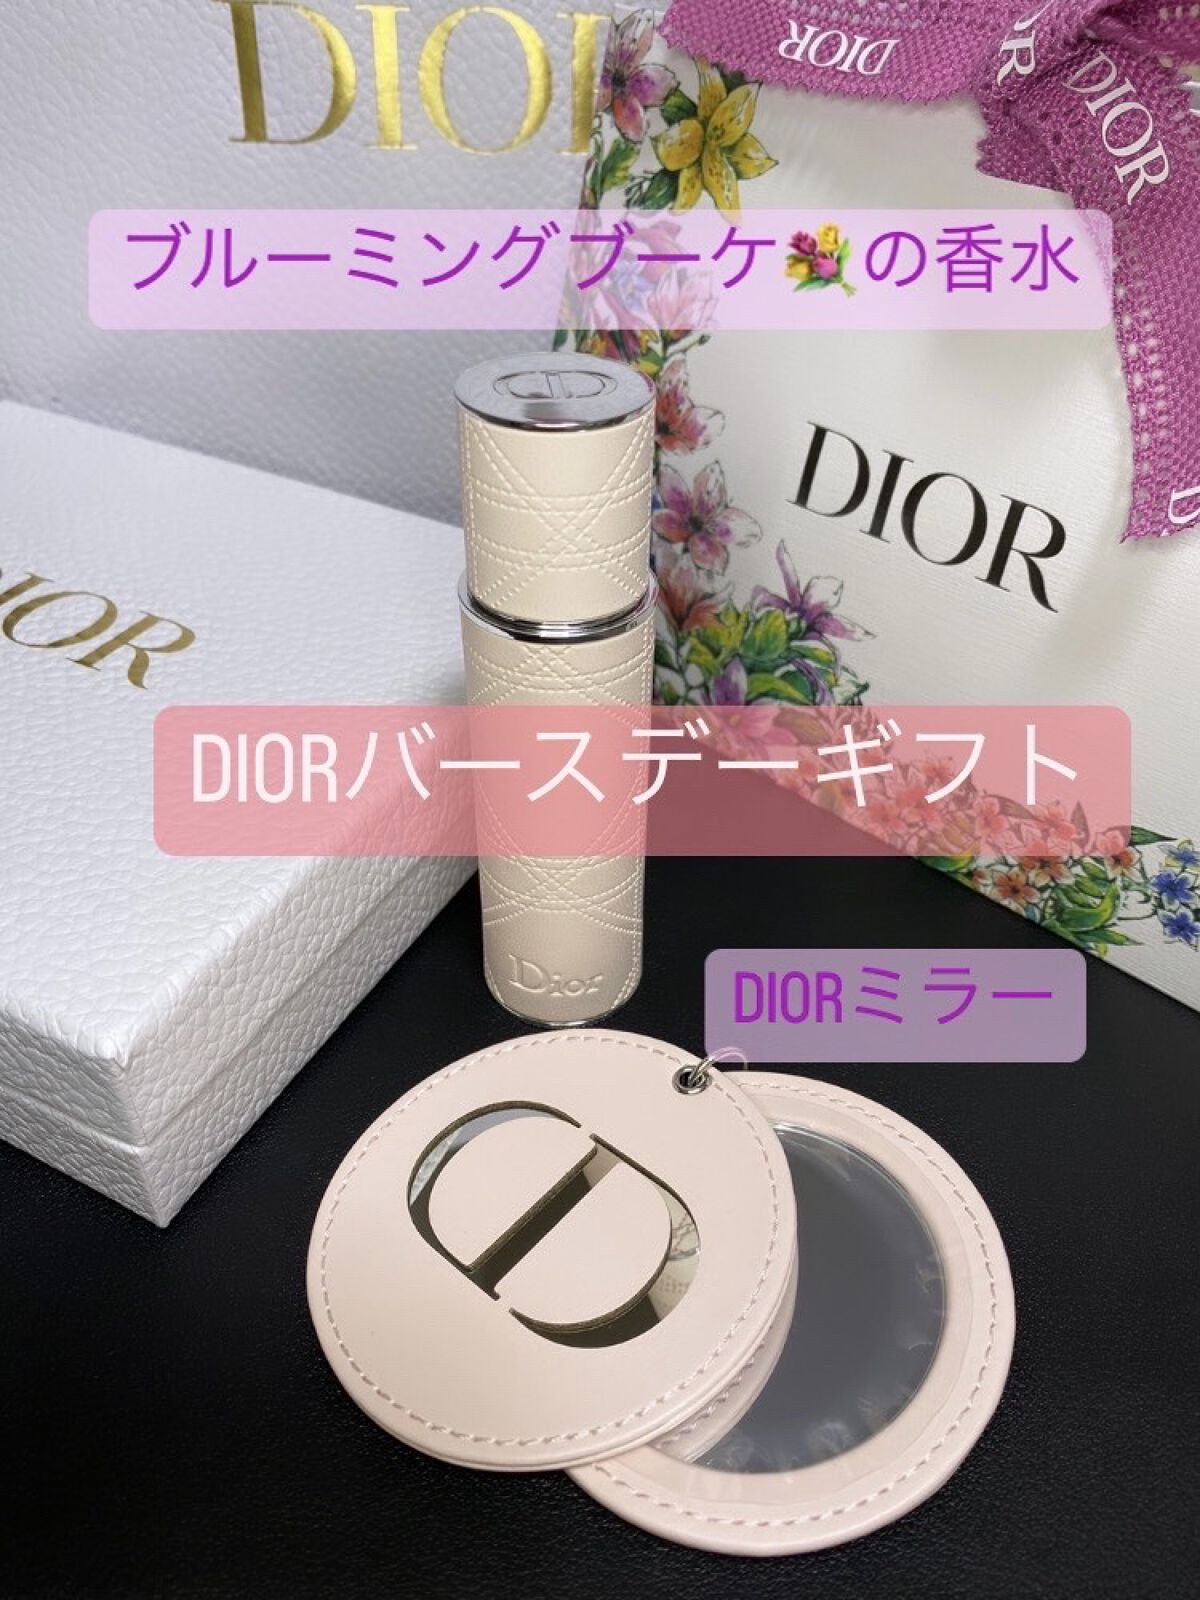 バースデープレゼント｜Diorの口コミ ☆クリスタル会員Diorのバースデープレゼント???? by ????☺︎ミク☺︎????フォロバOK☺︎(乾燥肌)  LIPS